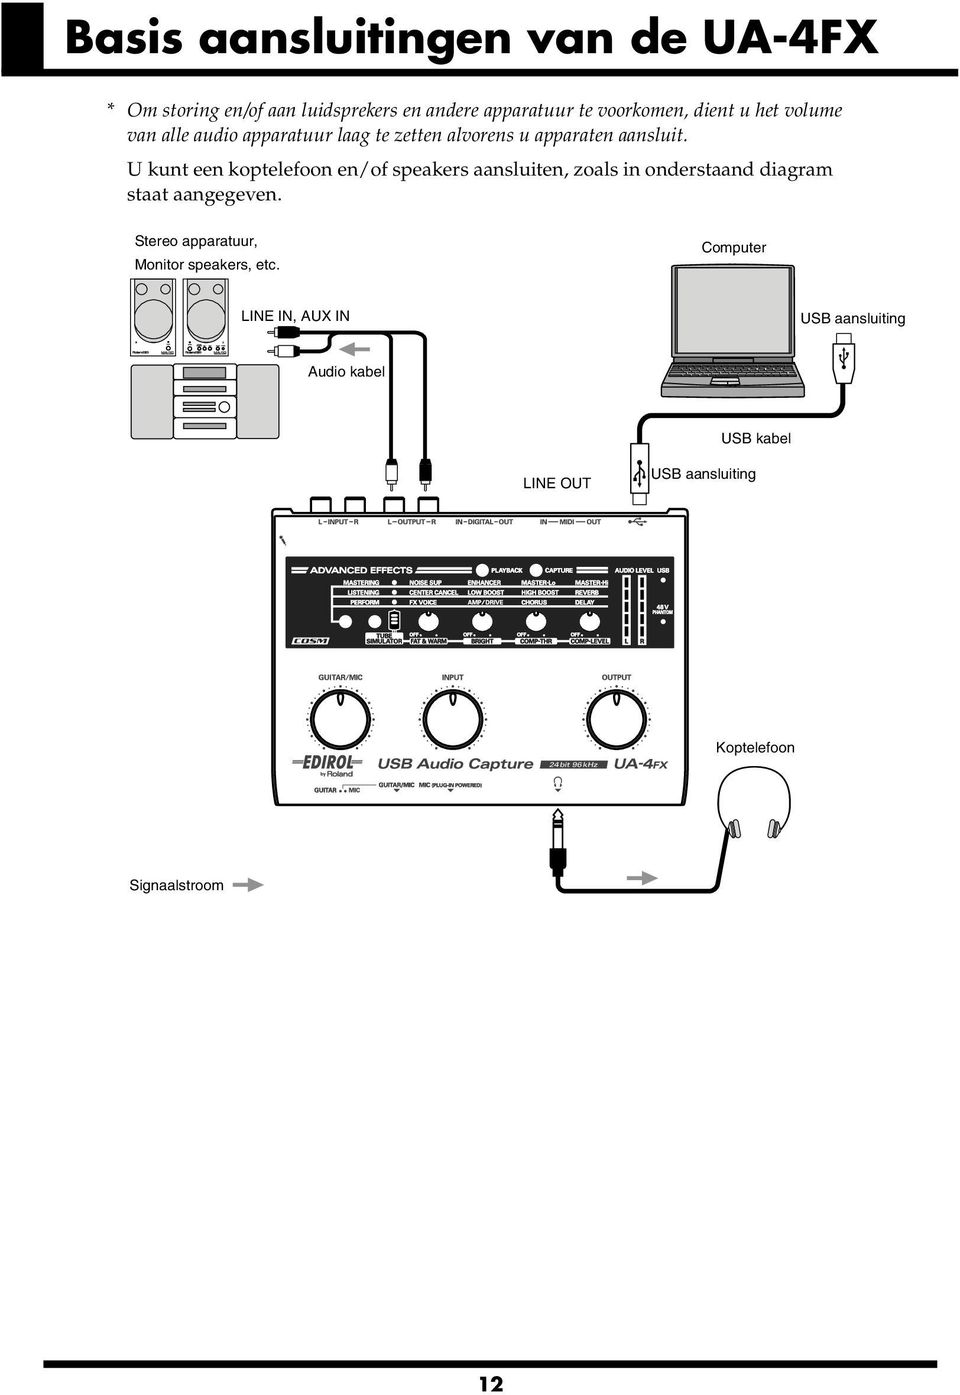 U kunt een koptelefoon en/of speakers aansluiten, zoals in onderstaand diagram staat aangegeven. fig.basic.